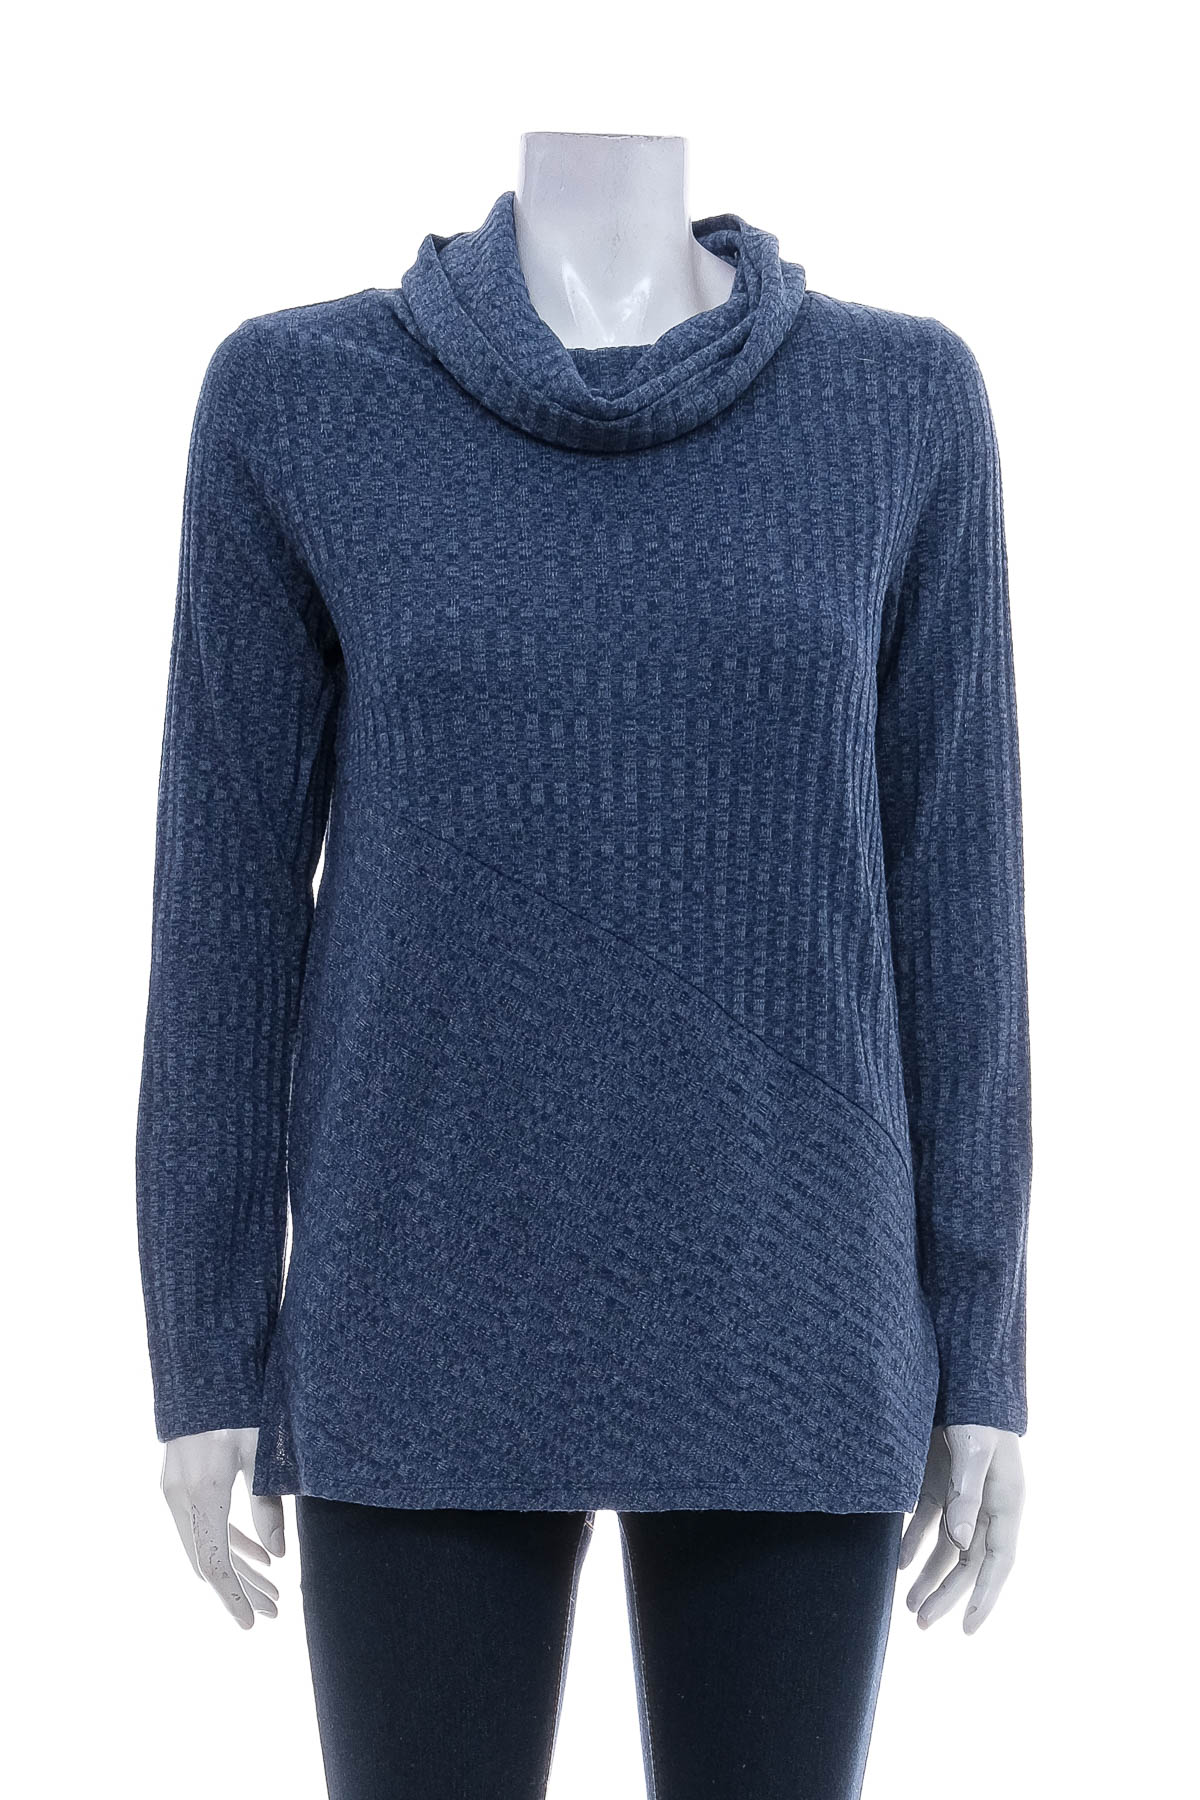 Women's sweater - Soft Surroundings - 0